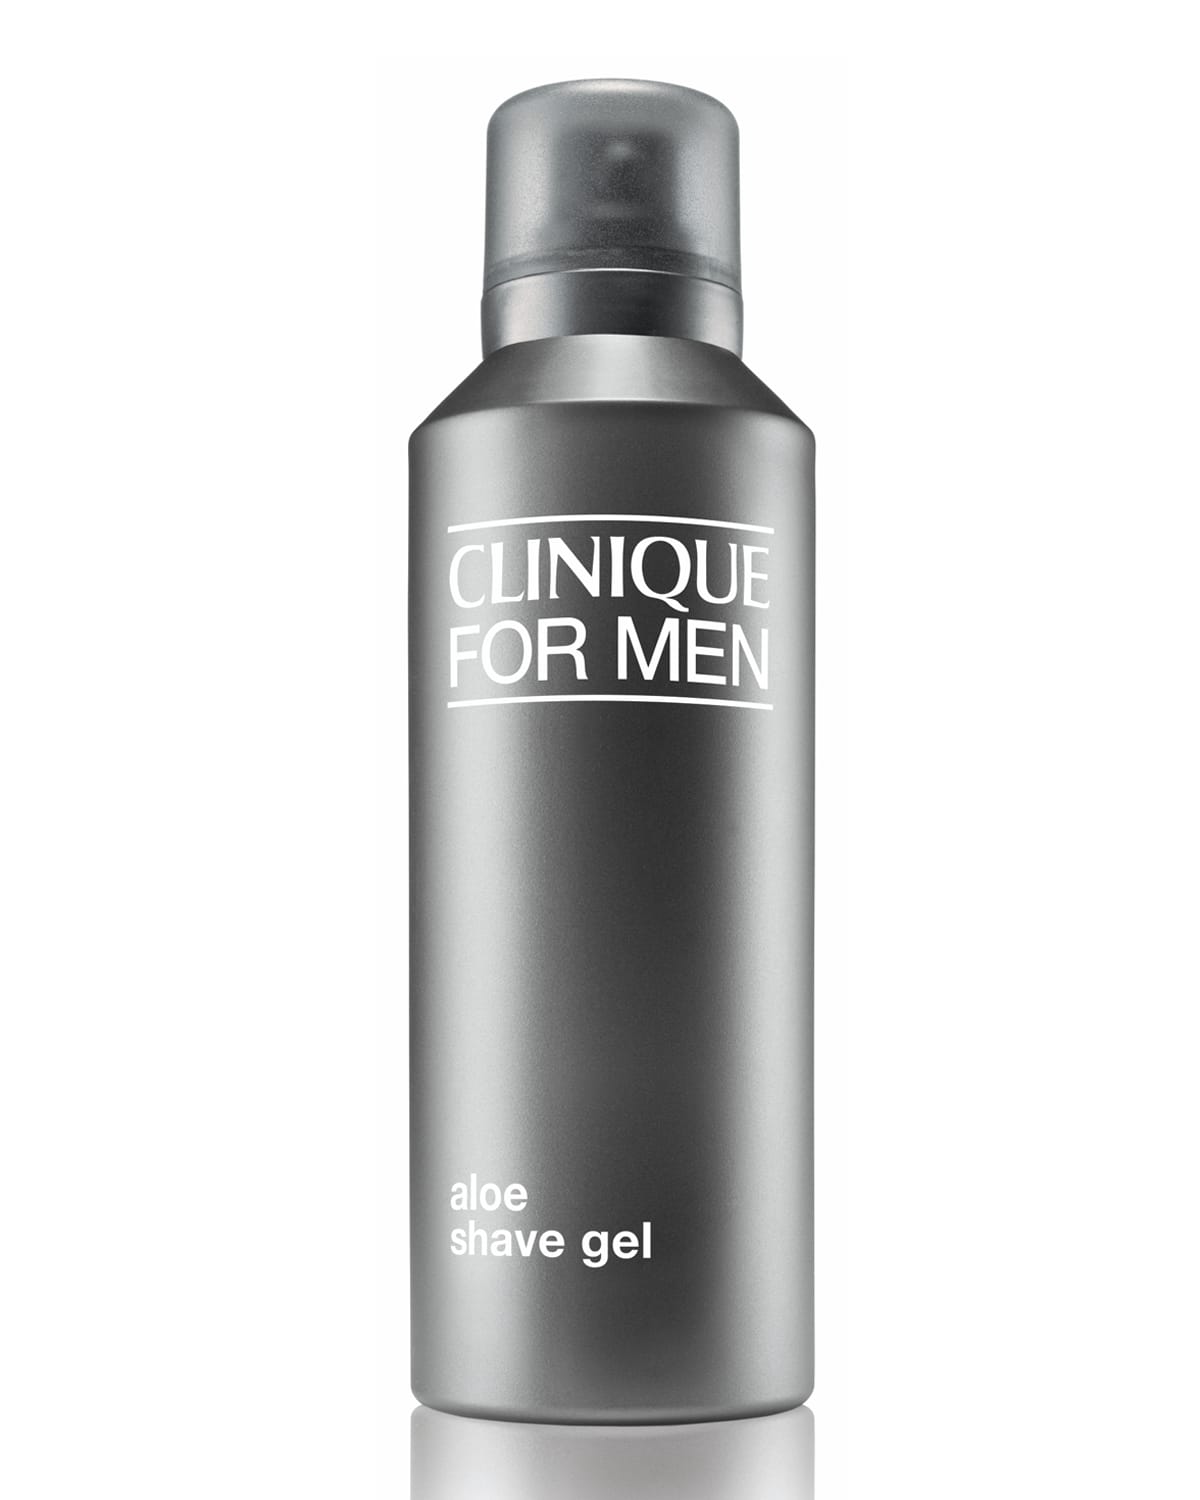 4.2 oz. Clinique For Men Aloe Shave Gel